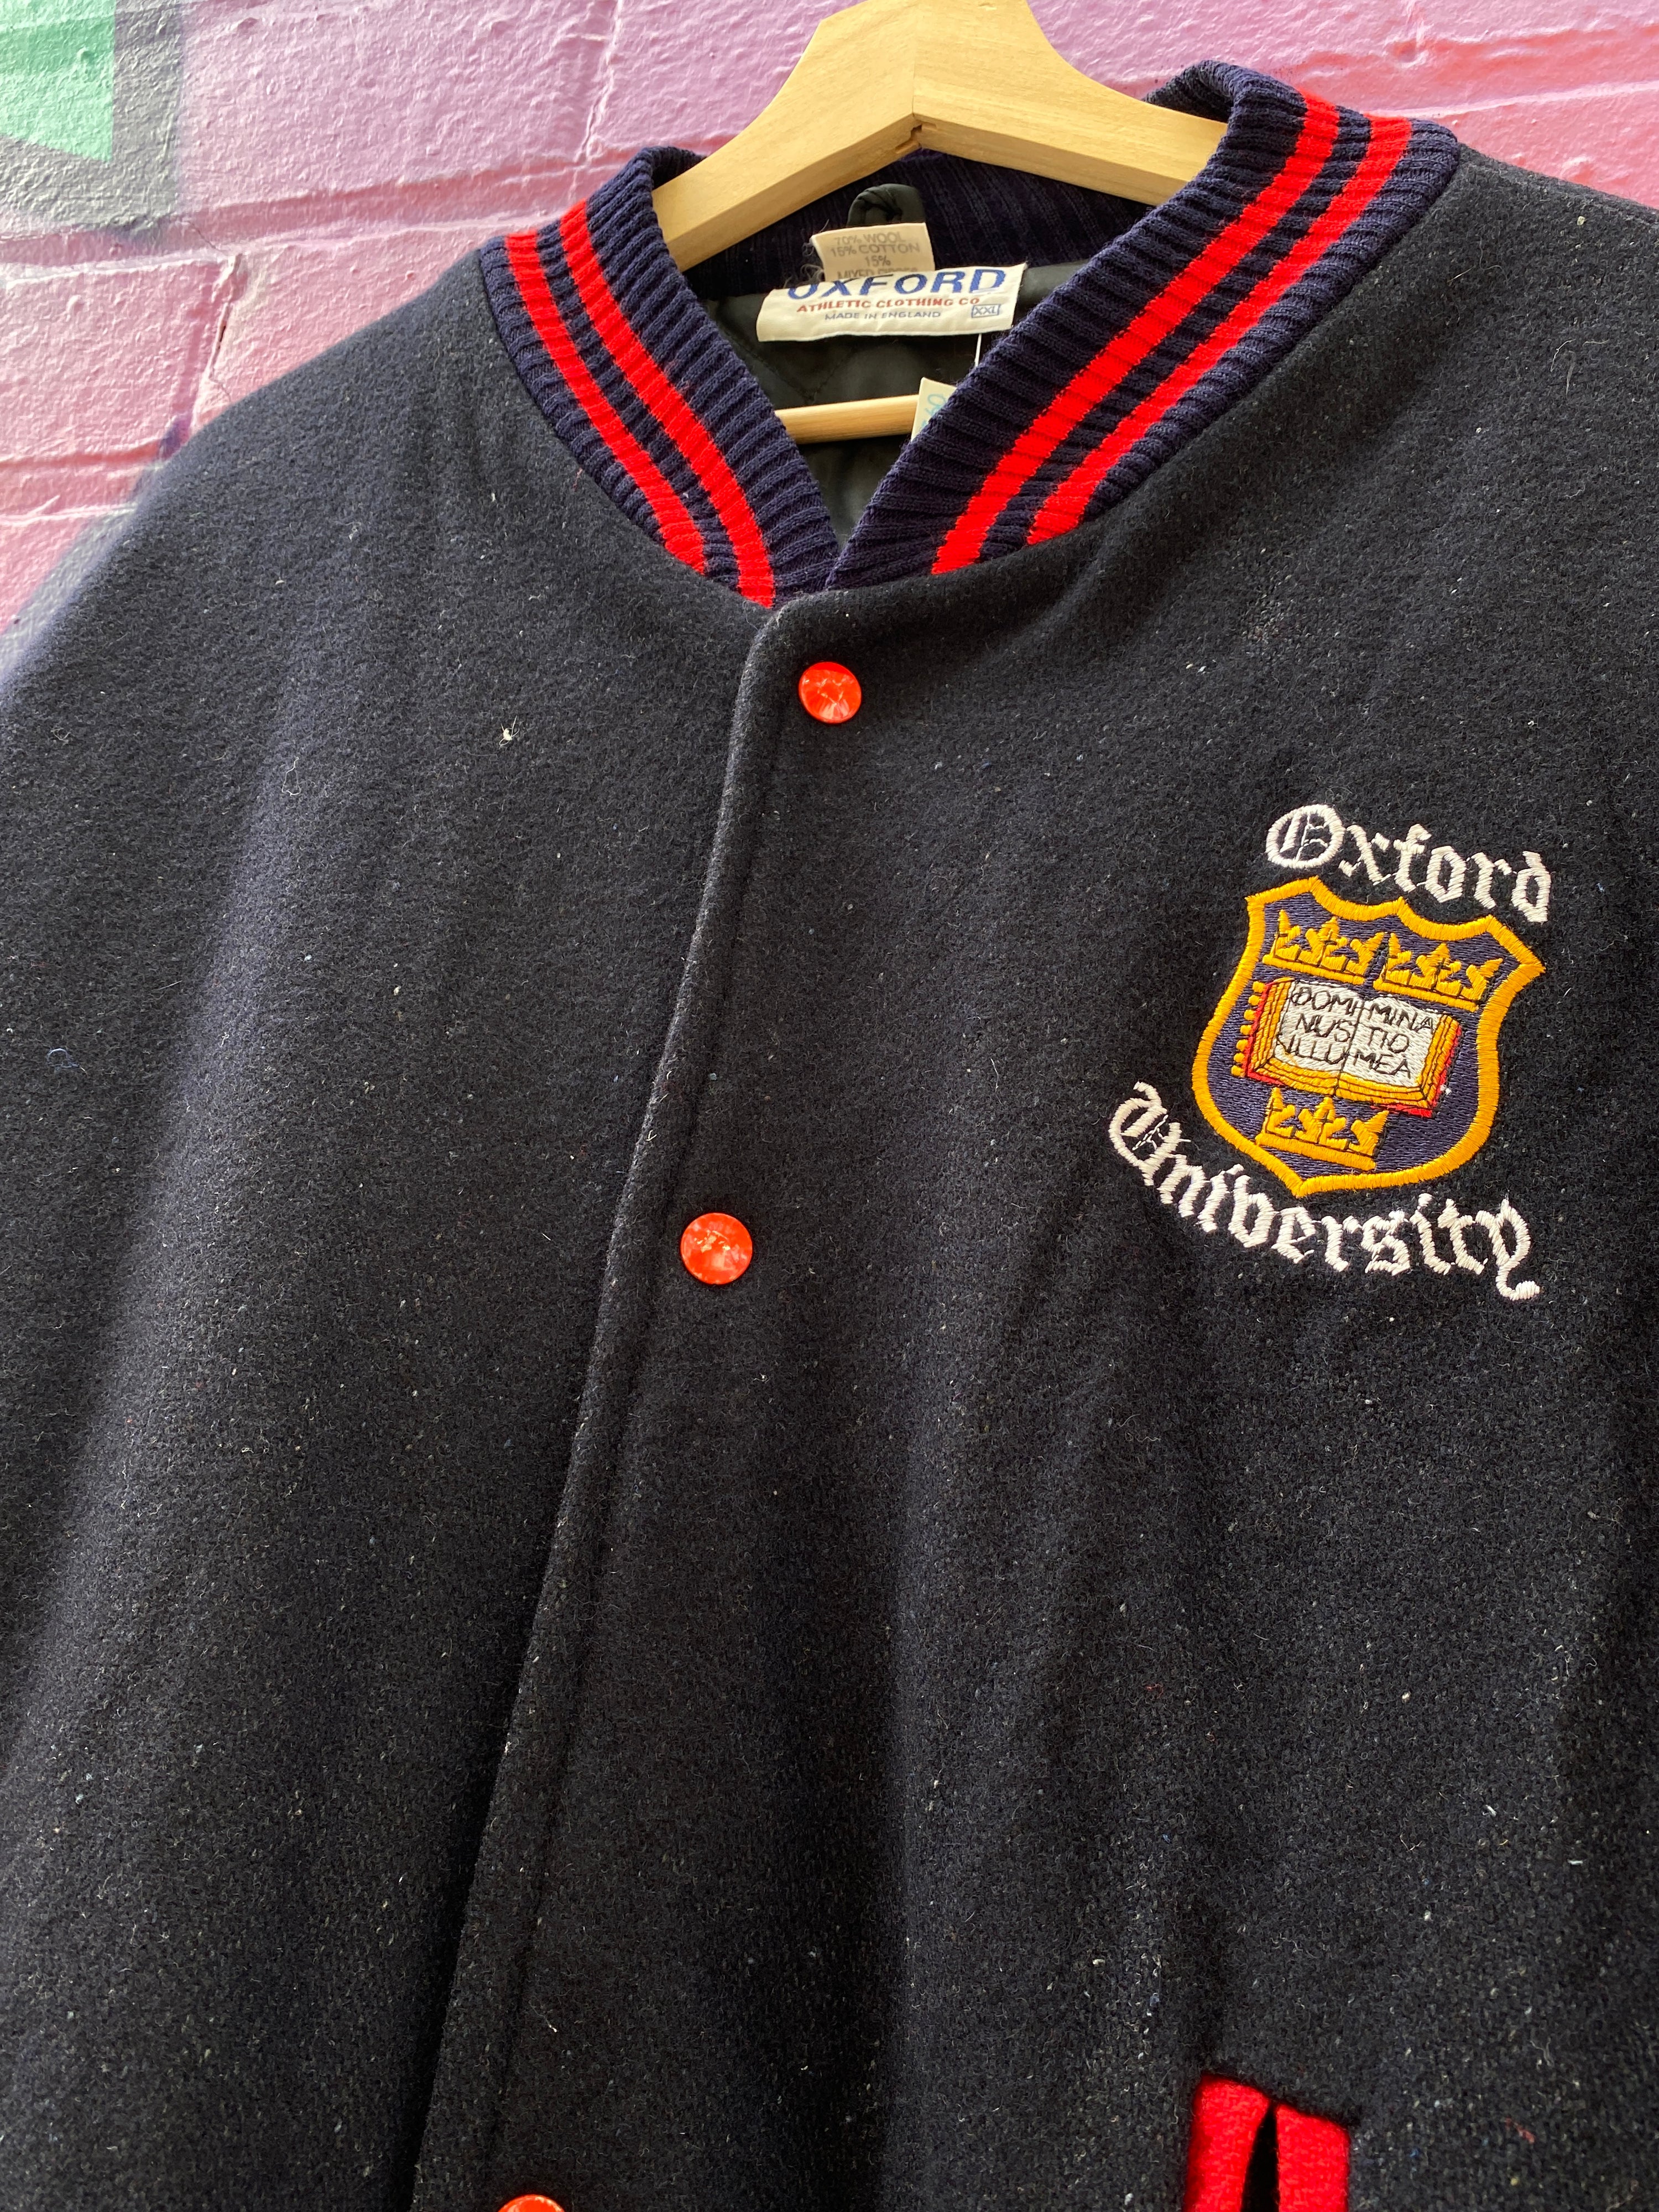 2XL - Oxford University Varsity Jacket Navy/Red